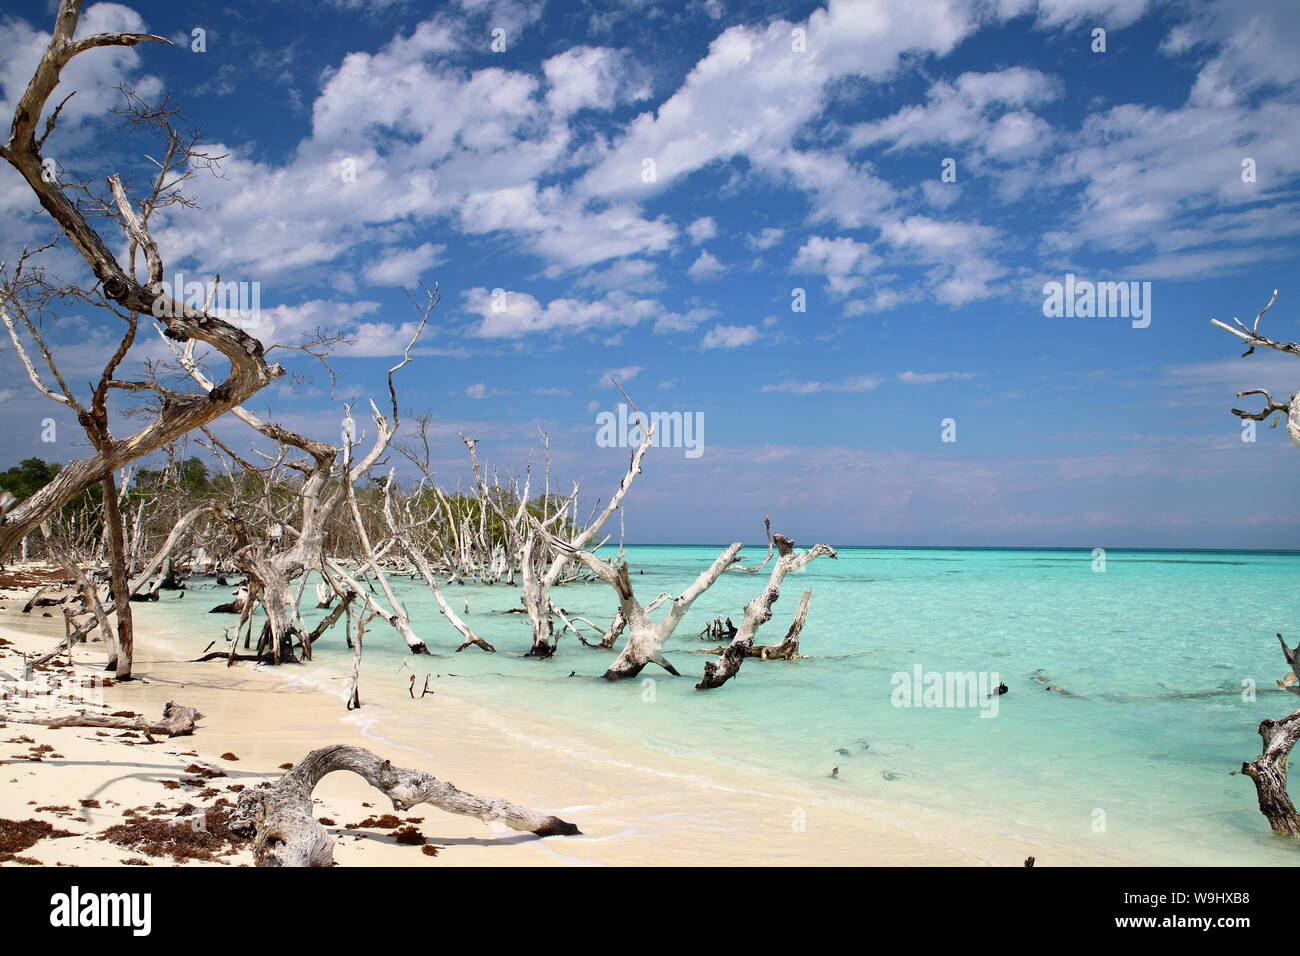 Playa de Cayo Levisa en Pinar del Rio, Cuba. Stock Photo